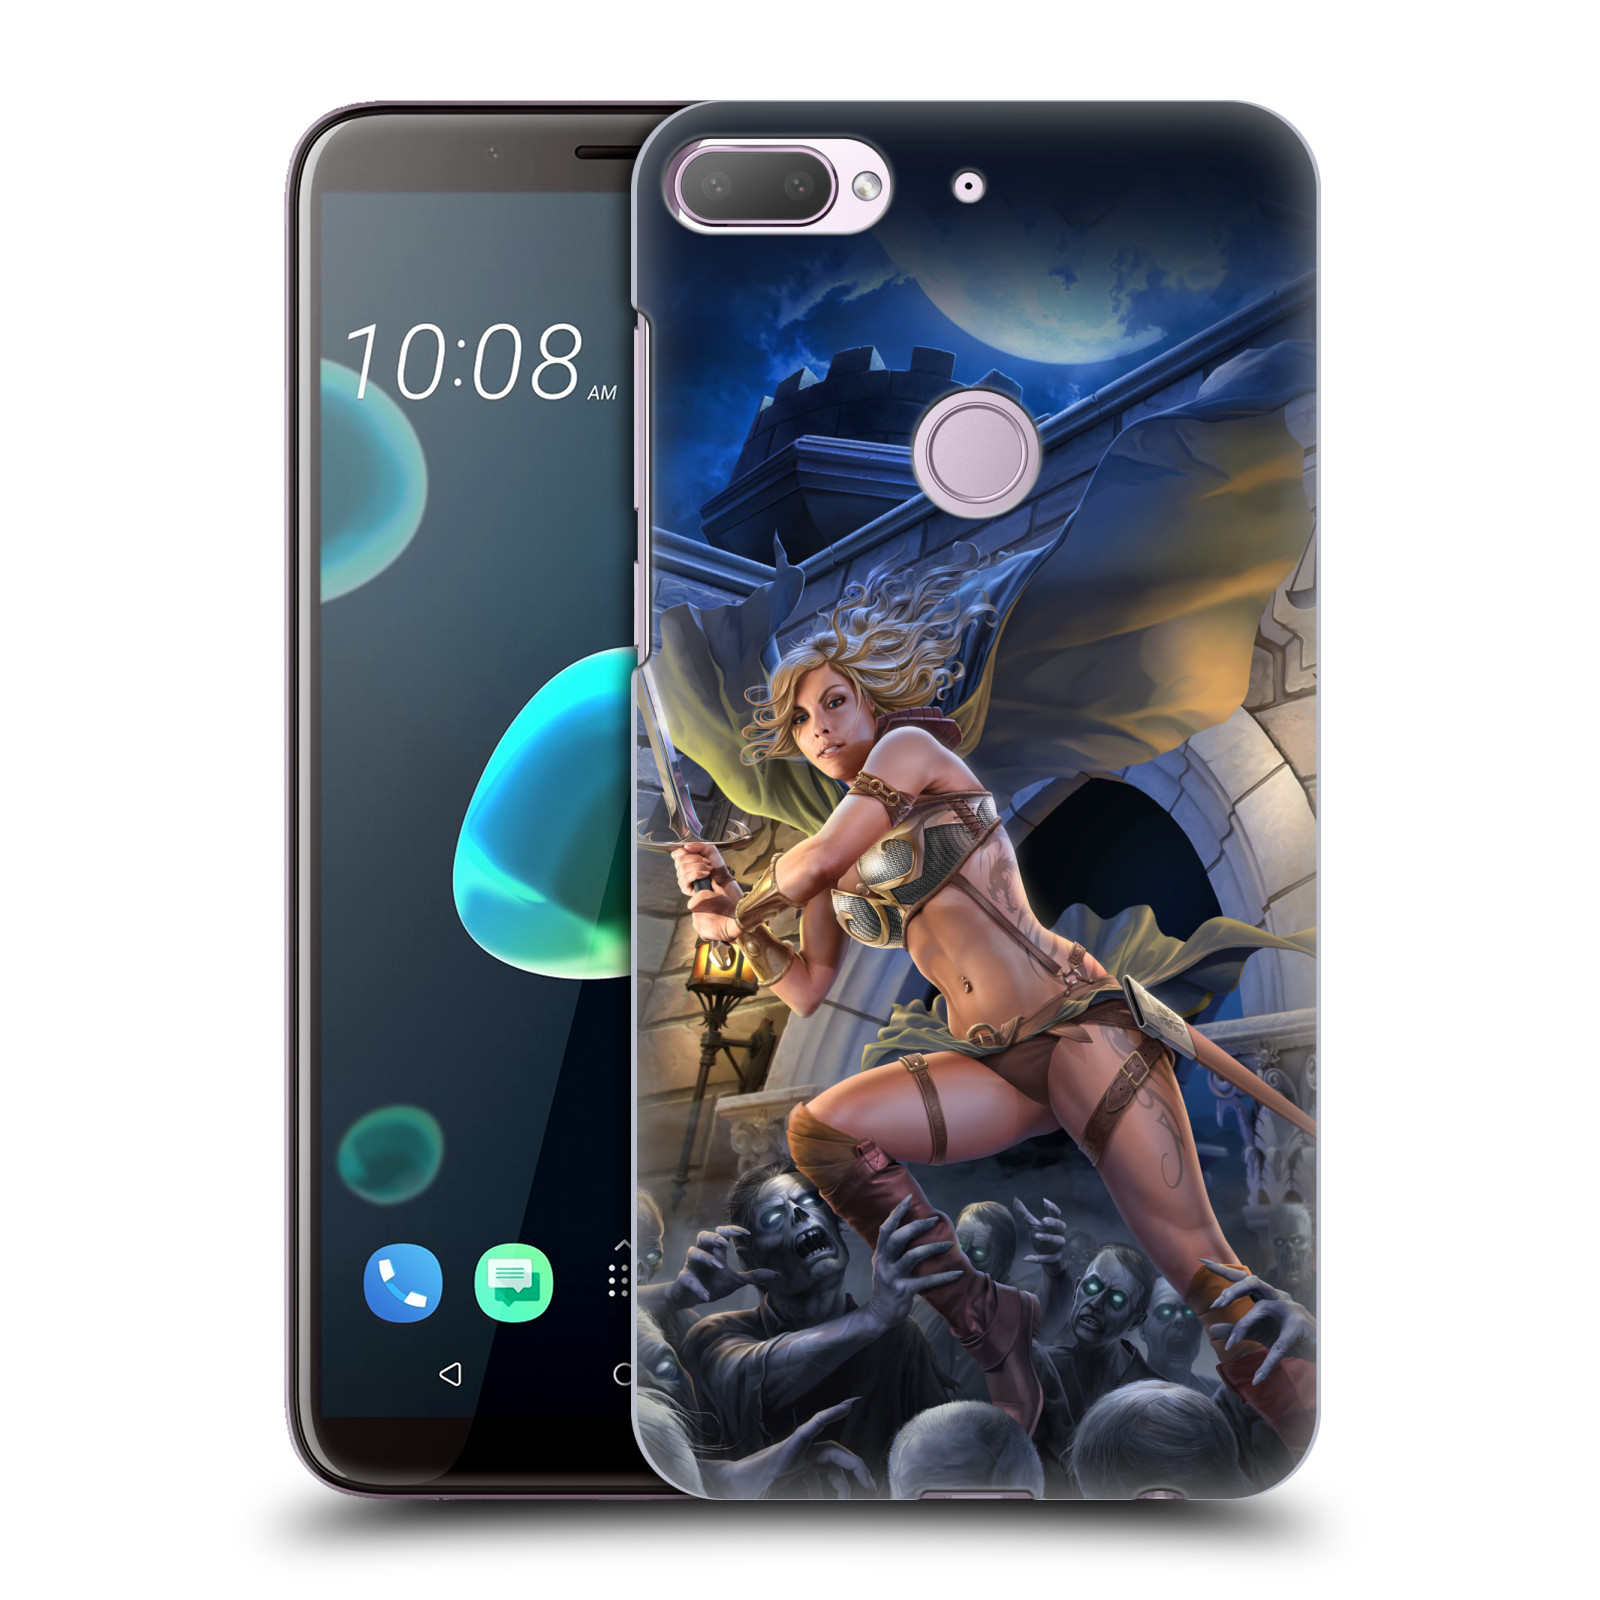 Pouzdro na mobil HTC Desire 12+ / Desire 12+ DUAL SIM - HEAD CASE - Fantasy kresby Tom Wood - Princezna bojovnice a zombies